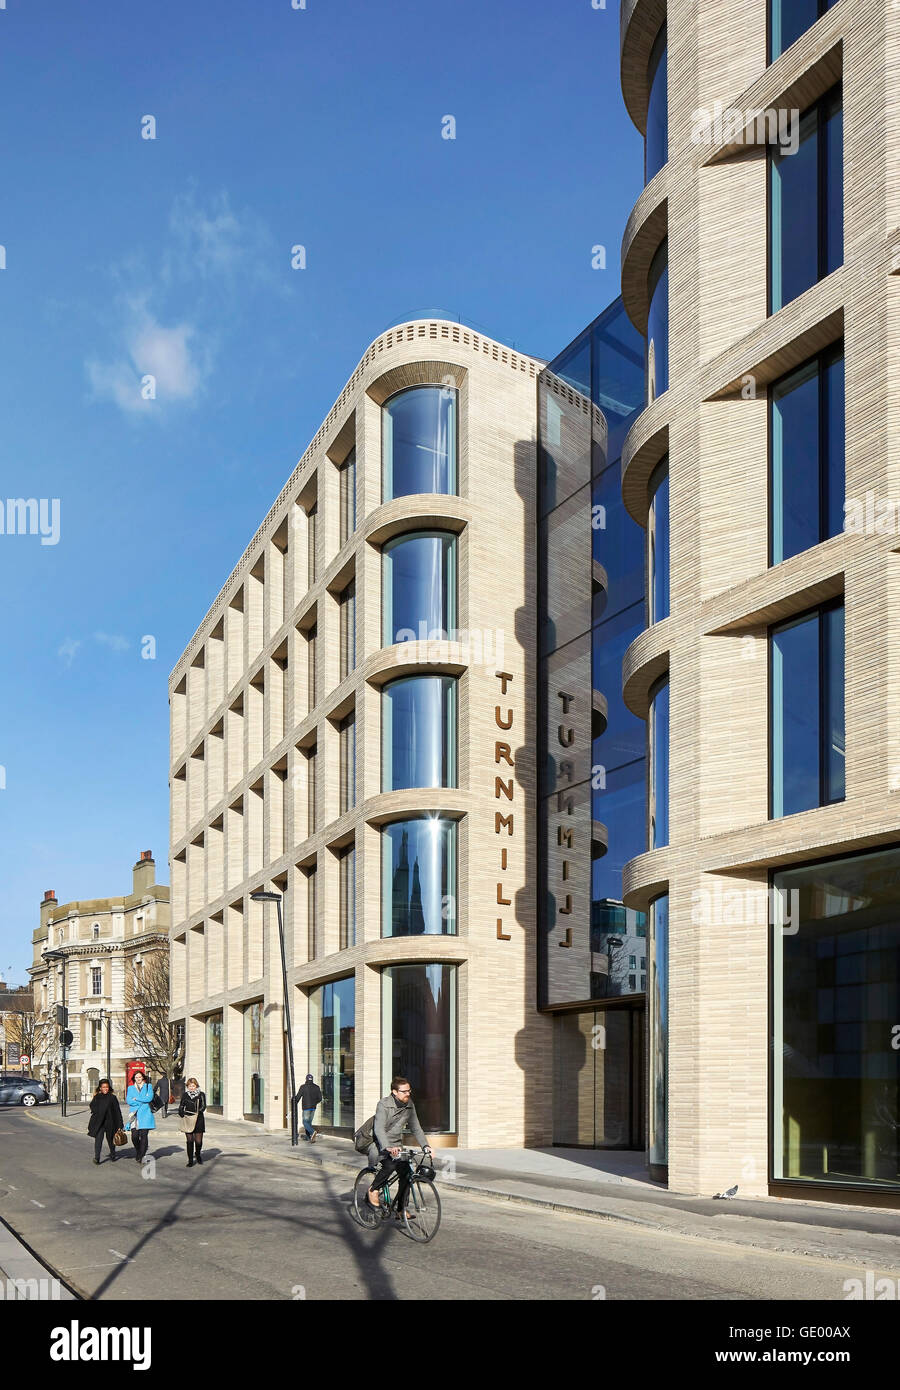 Façade en brique avec signalisation. Turnmill Building, Londres, Royaume-Uni. Architecte : Piercy & Company, 2015. Banque D'Images